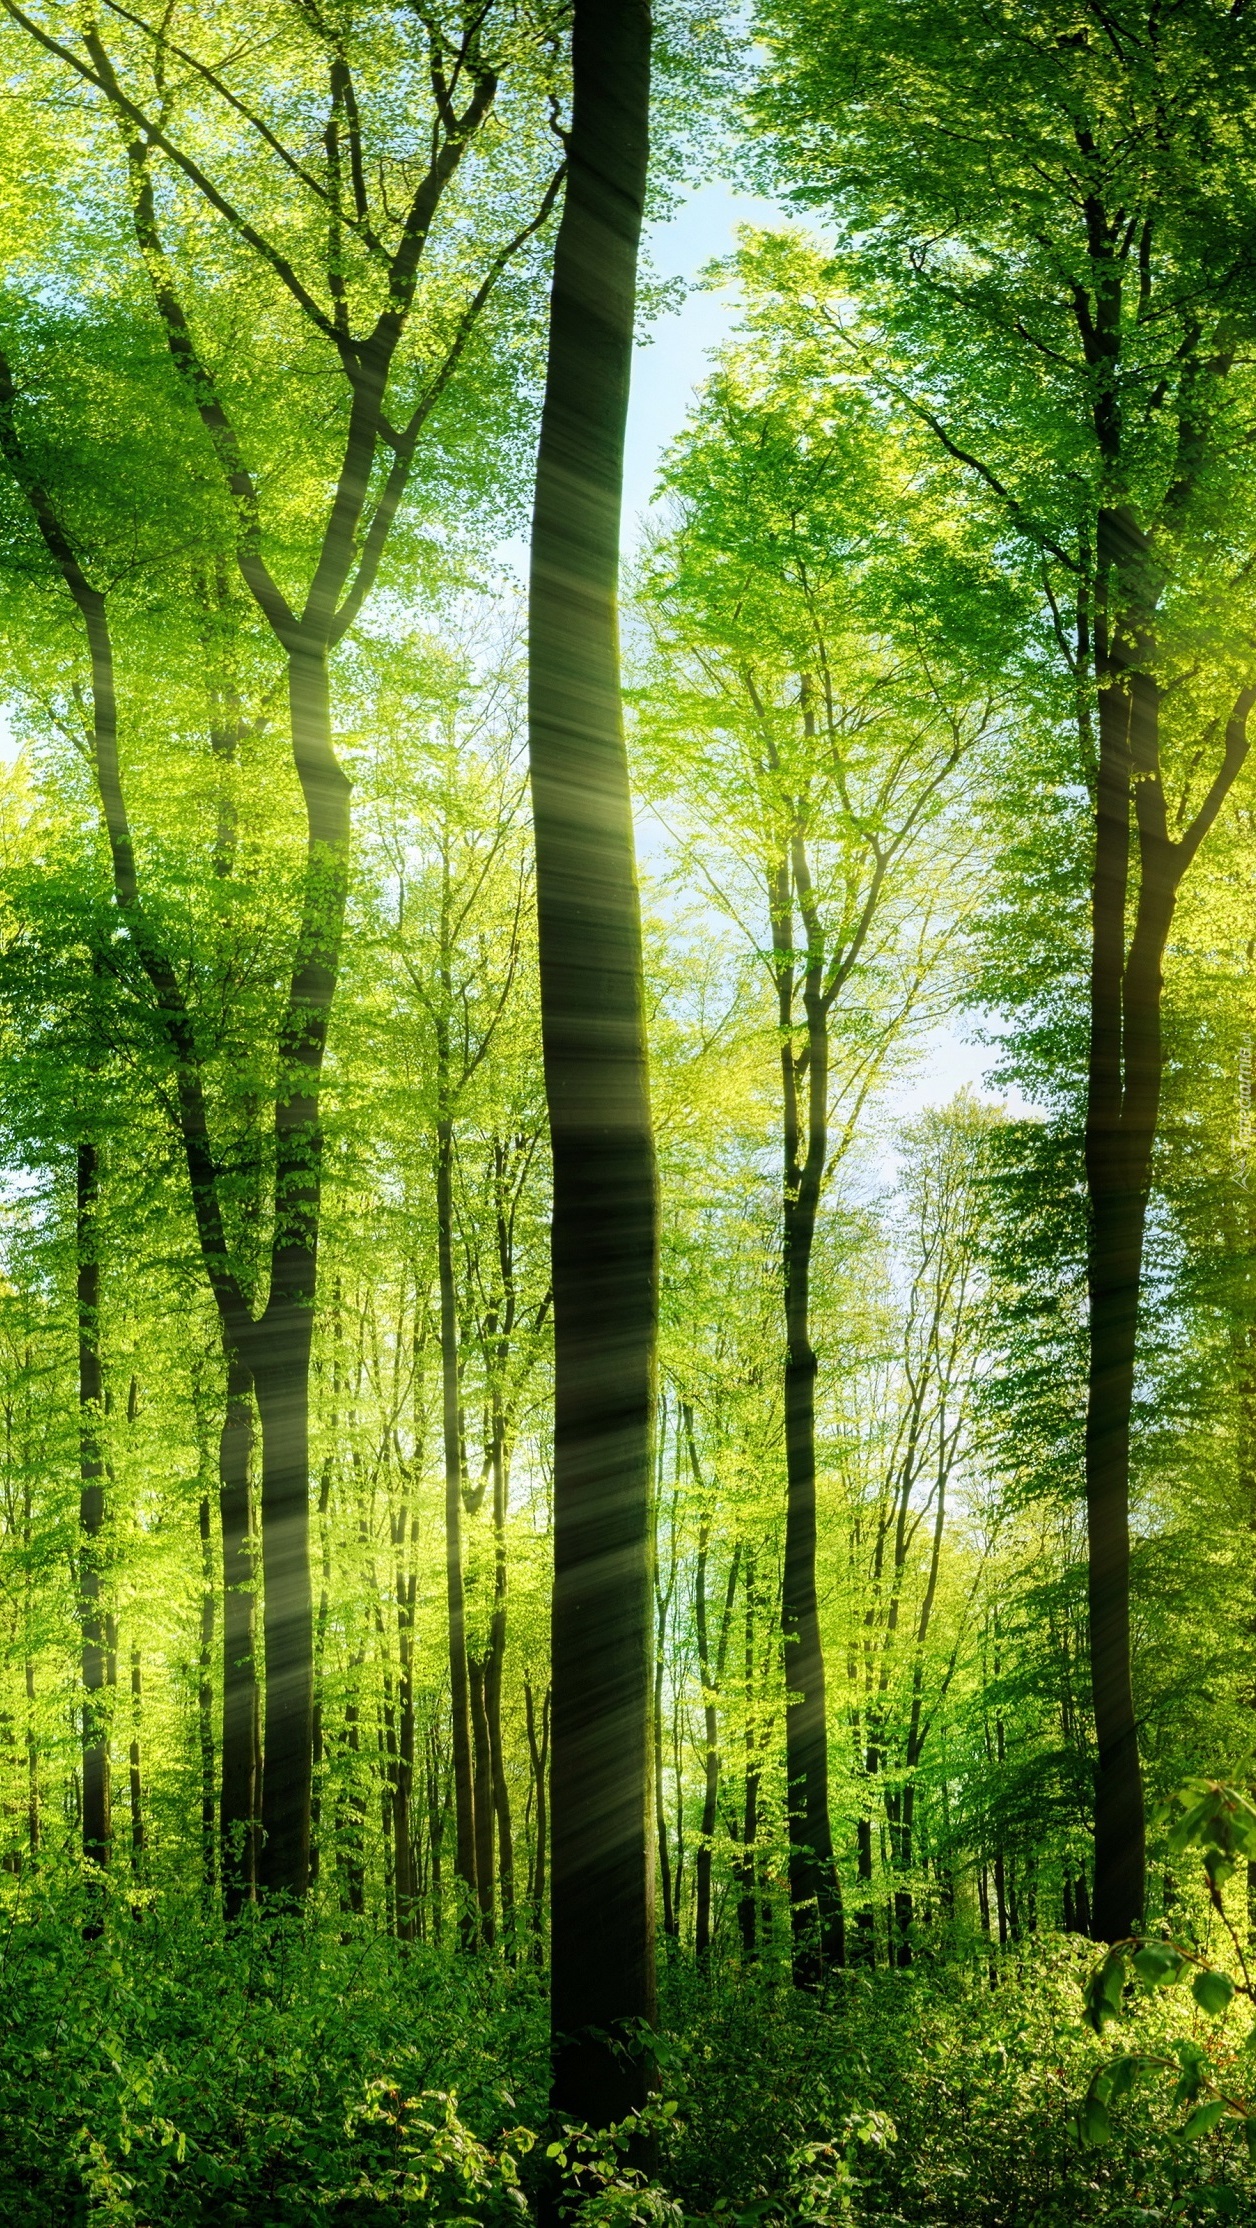 Zielony las w słońcu